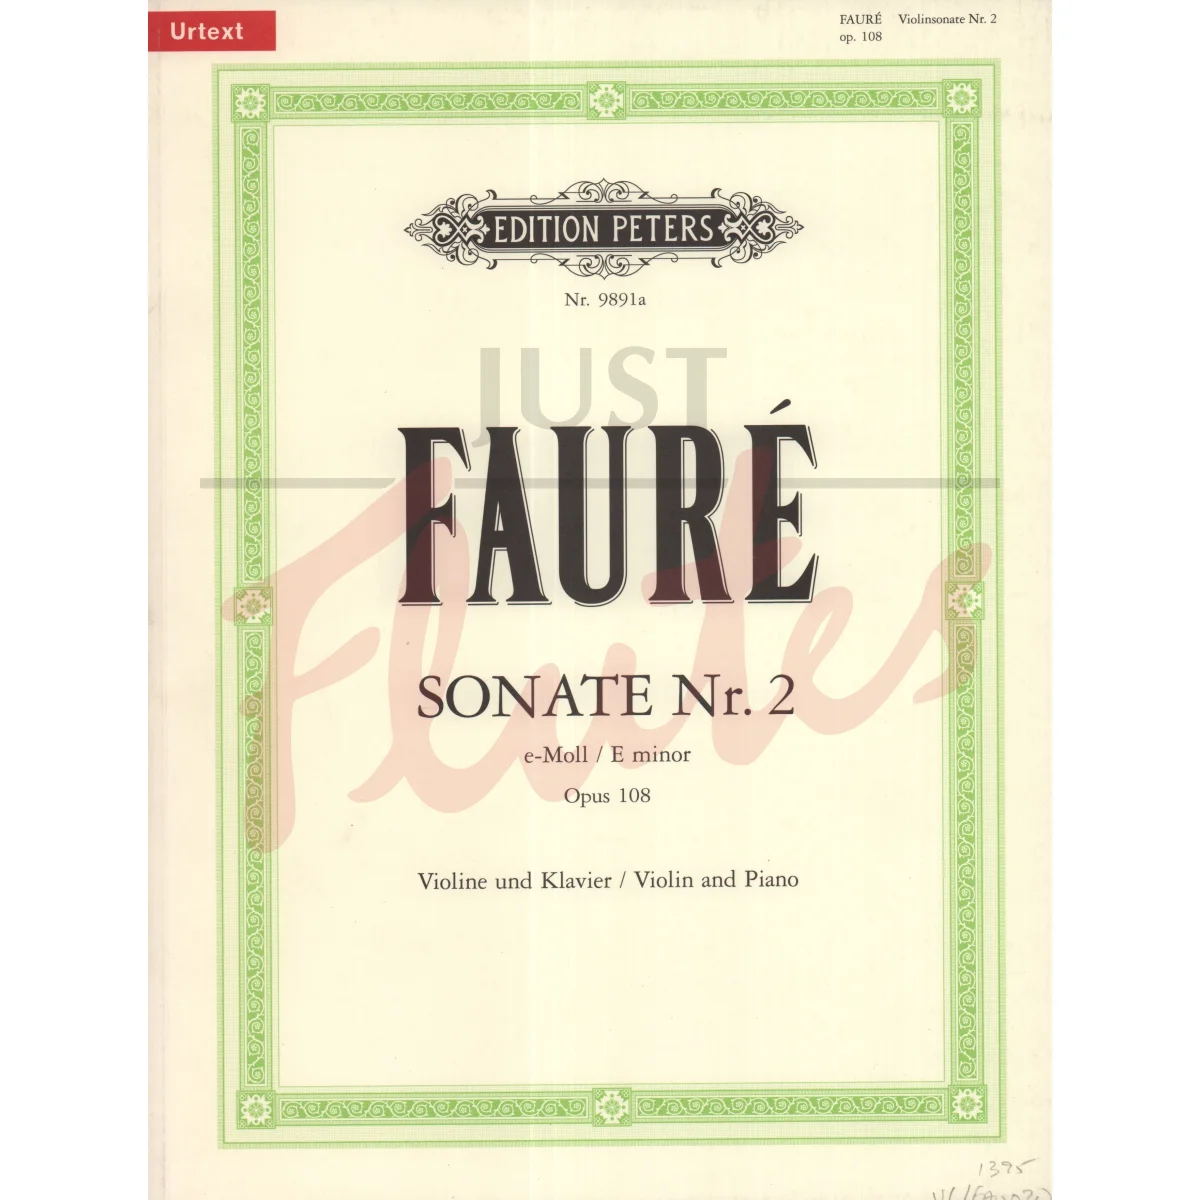 Sonata No 2 in E minor for Violin and Piano